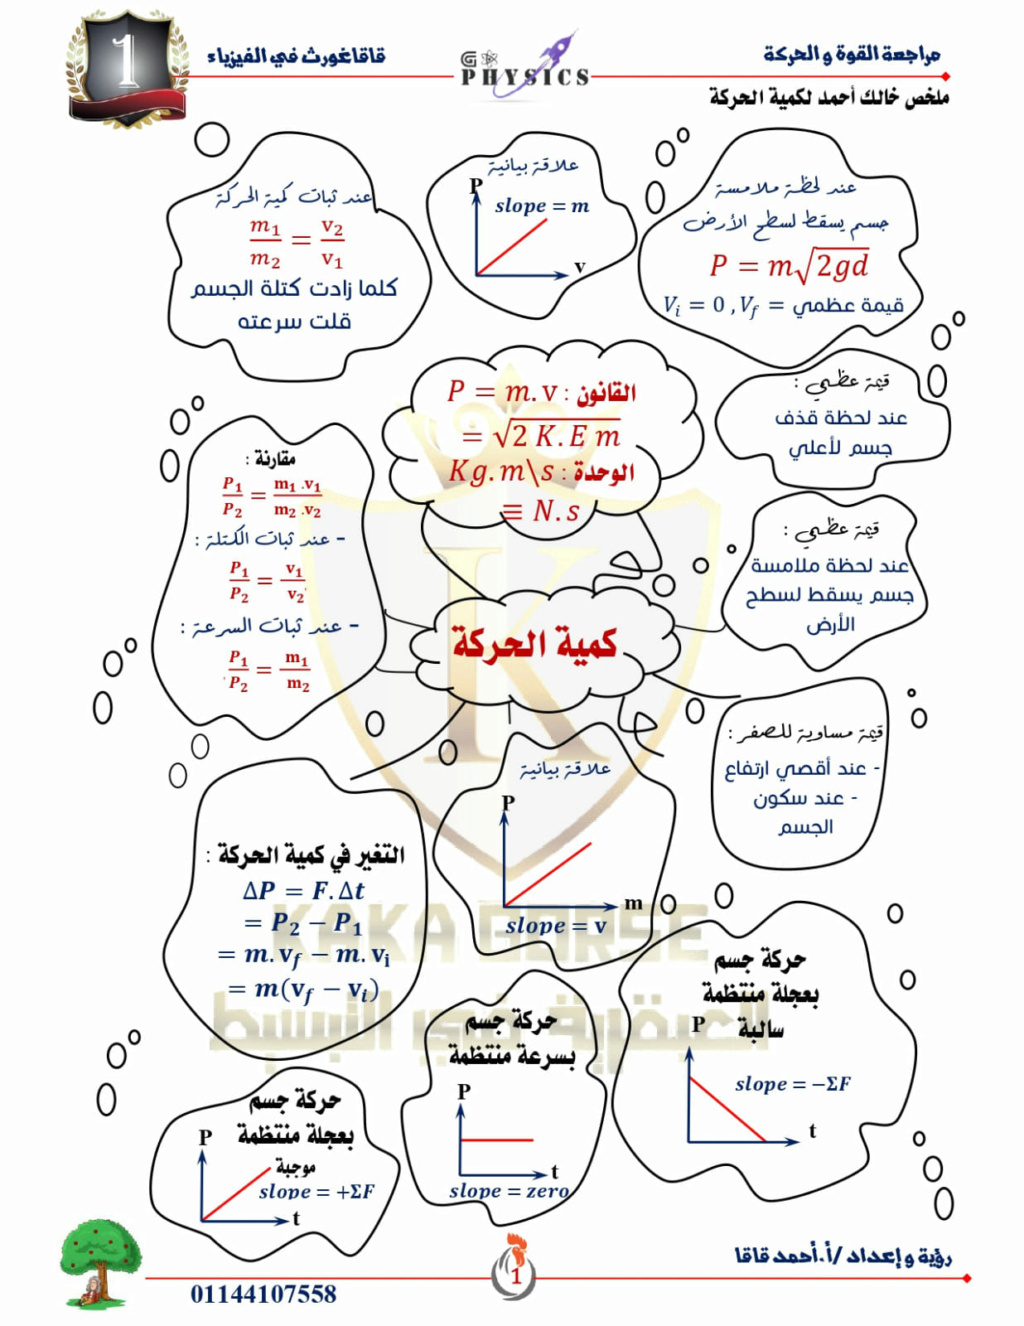 مراجعة ليلة الإمتحان في الفيزياء للصف الأول الثانوي الترم الثاني أ. إبراهيم محمد محجوب 1102